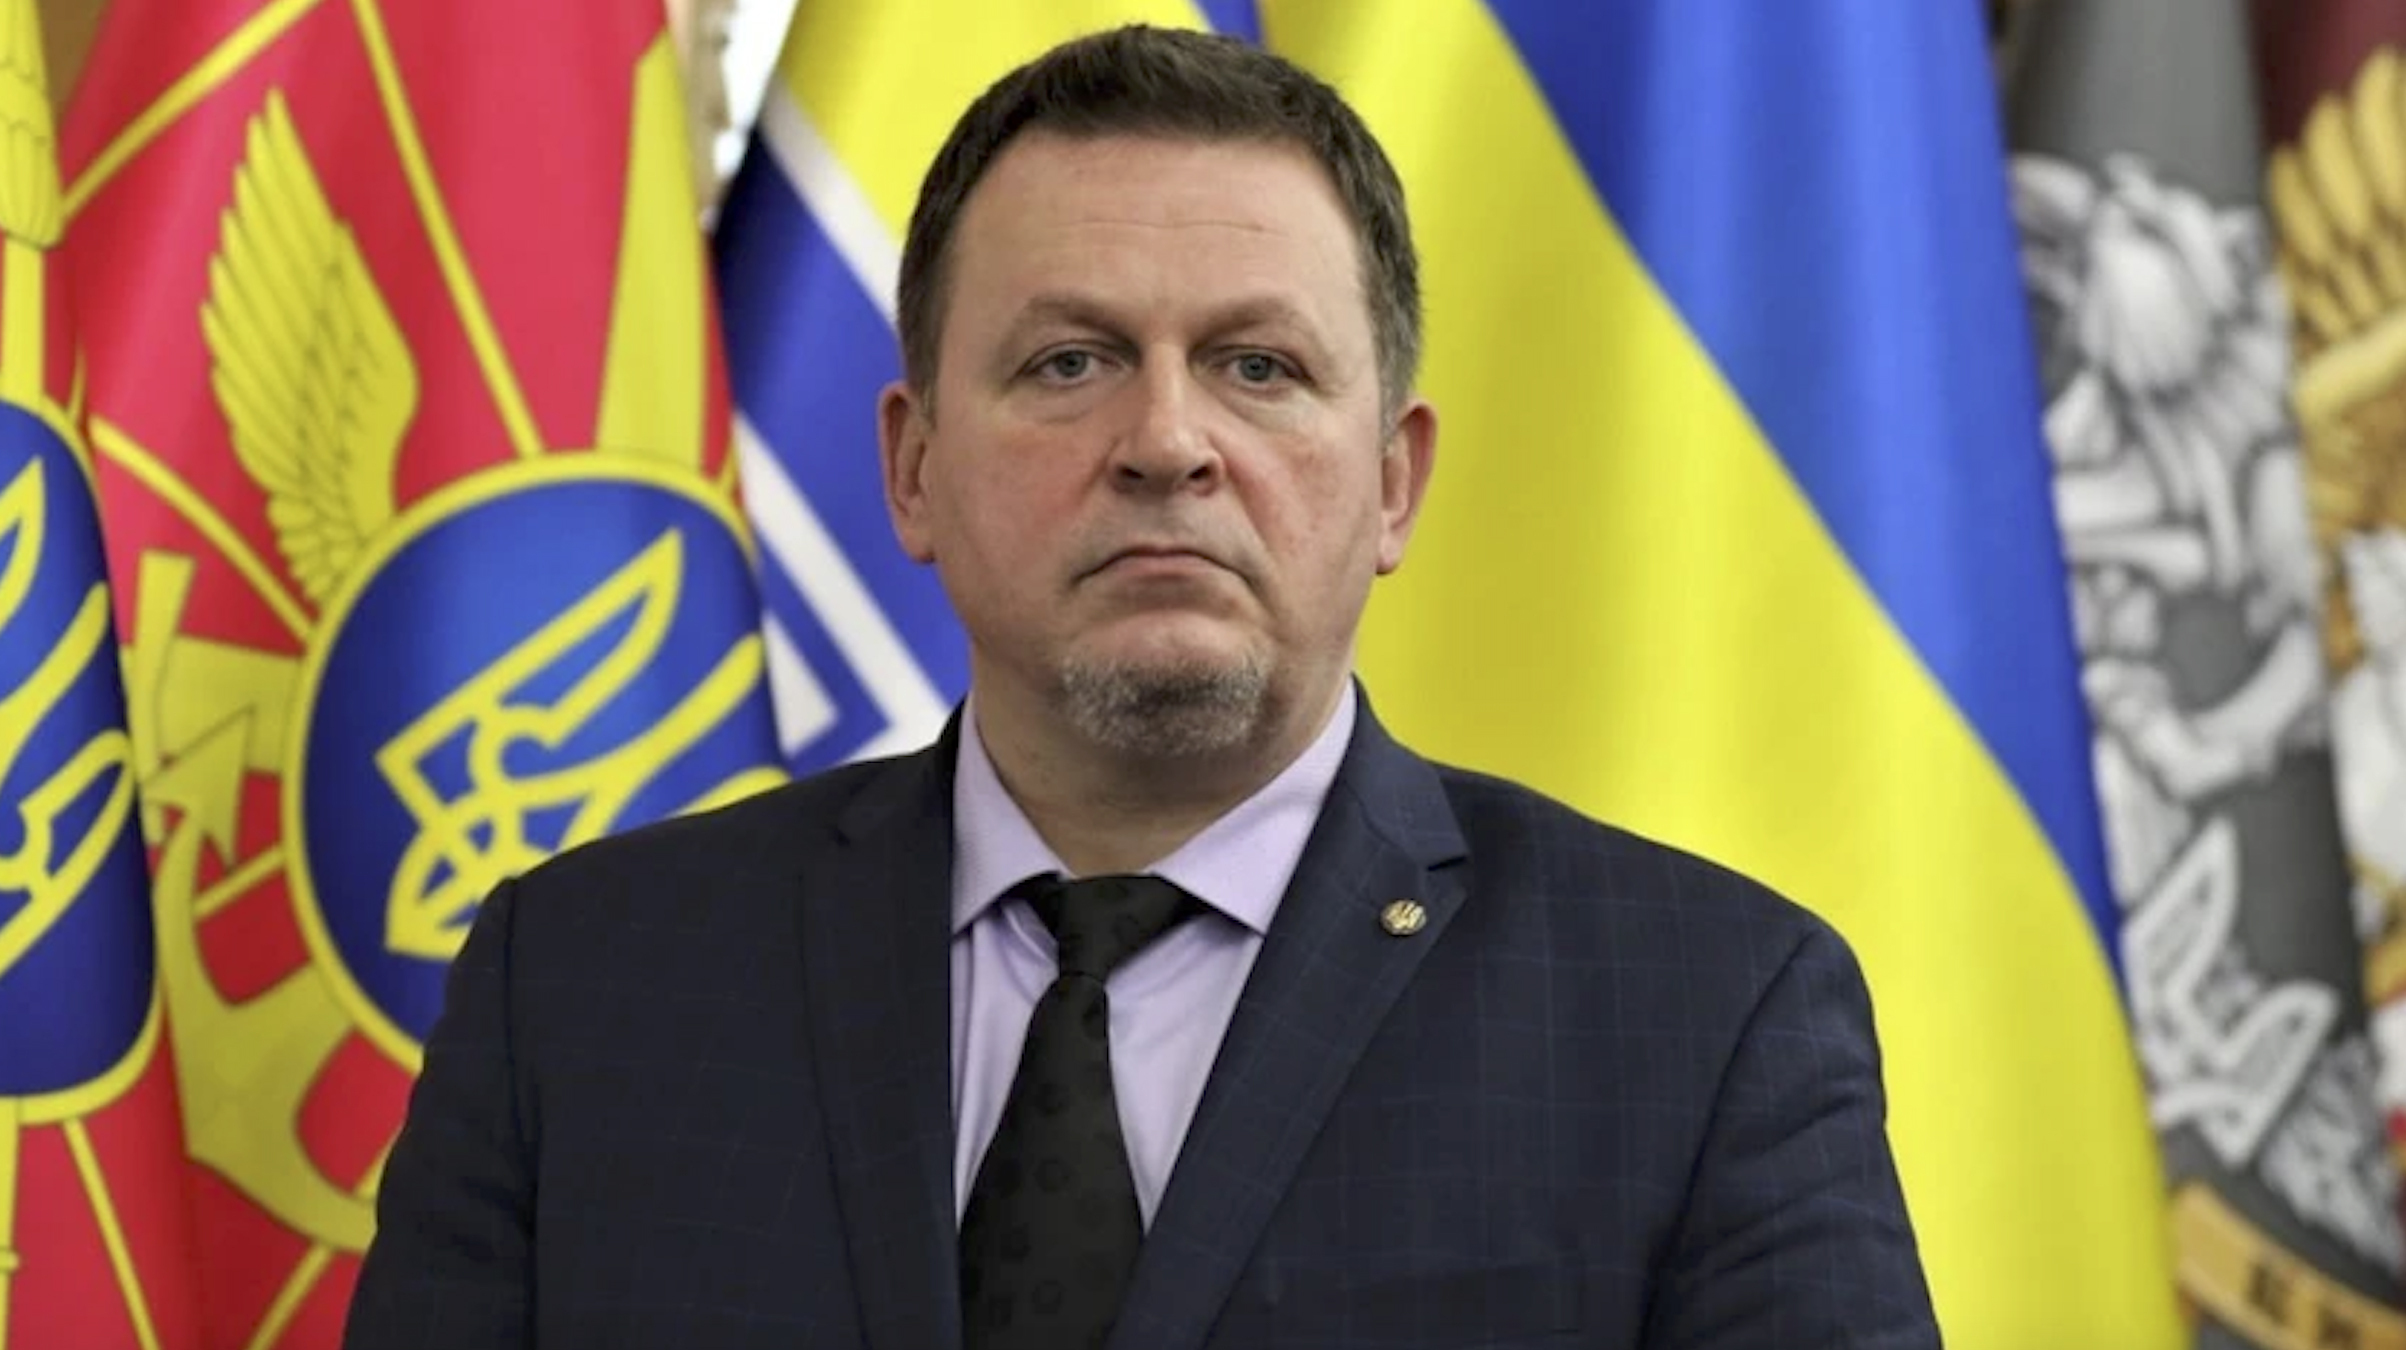 Korruptionsvorwürfe - EU-Kommission fordert von der Ukraine weitere Anstrengungen zur Aufdeckung von Machtmissbrauch